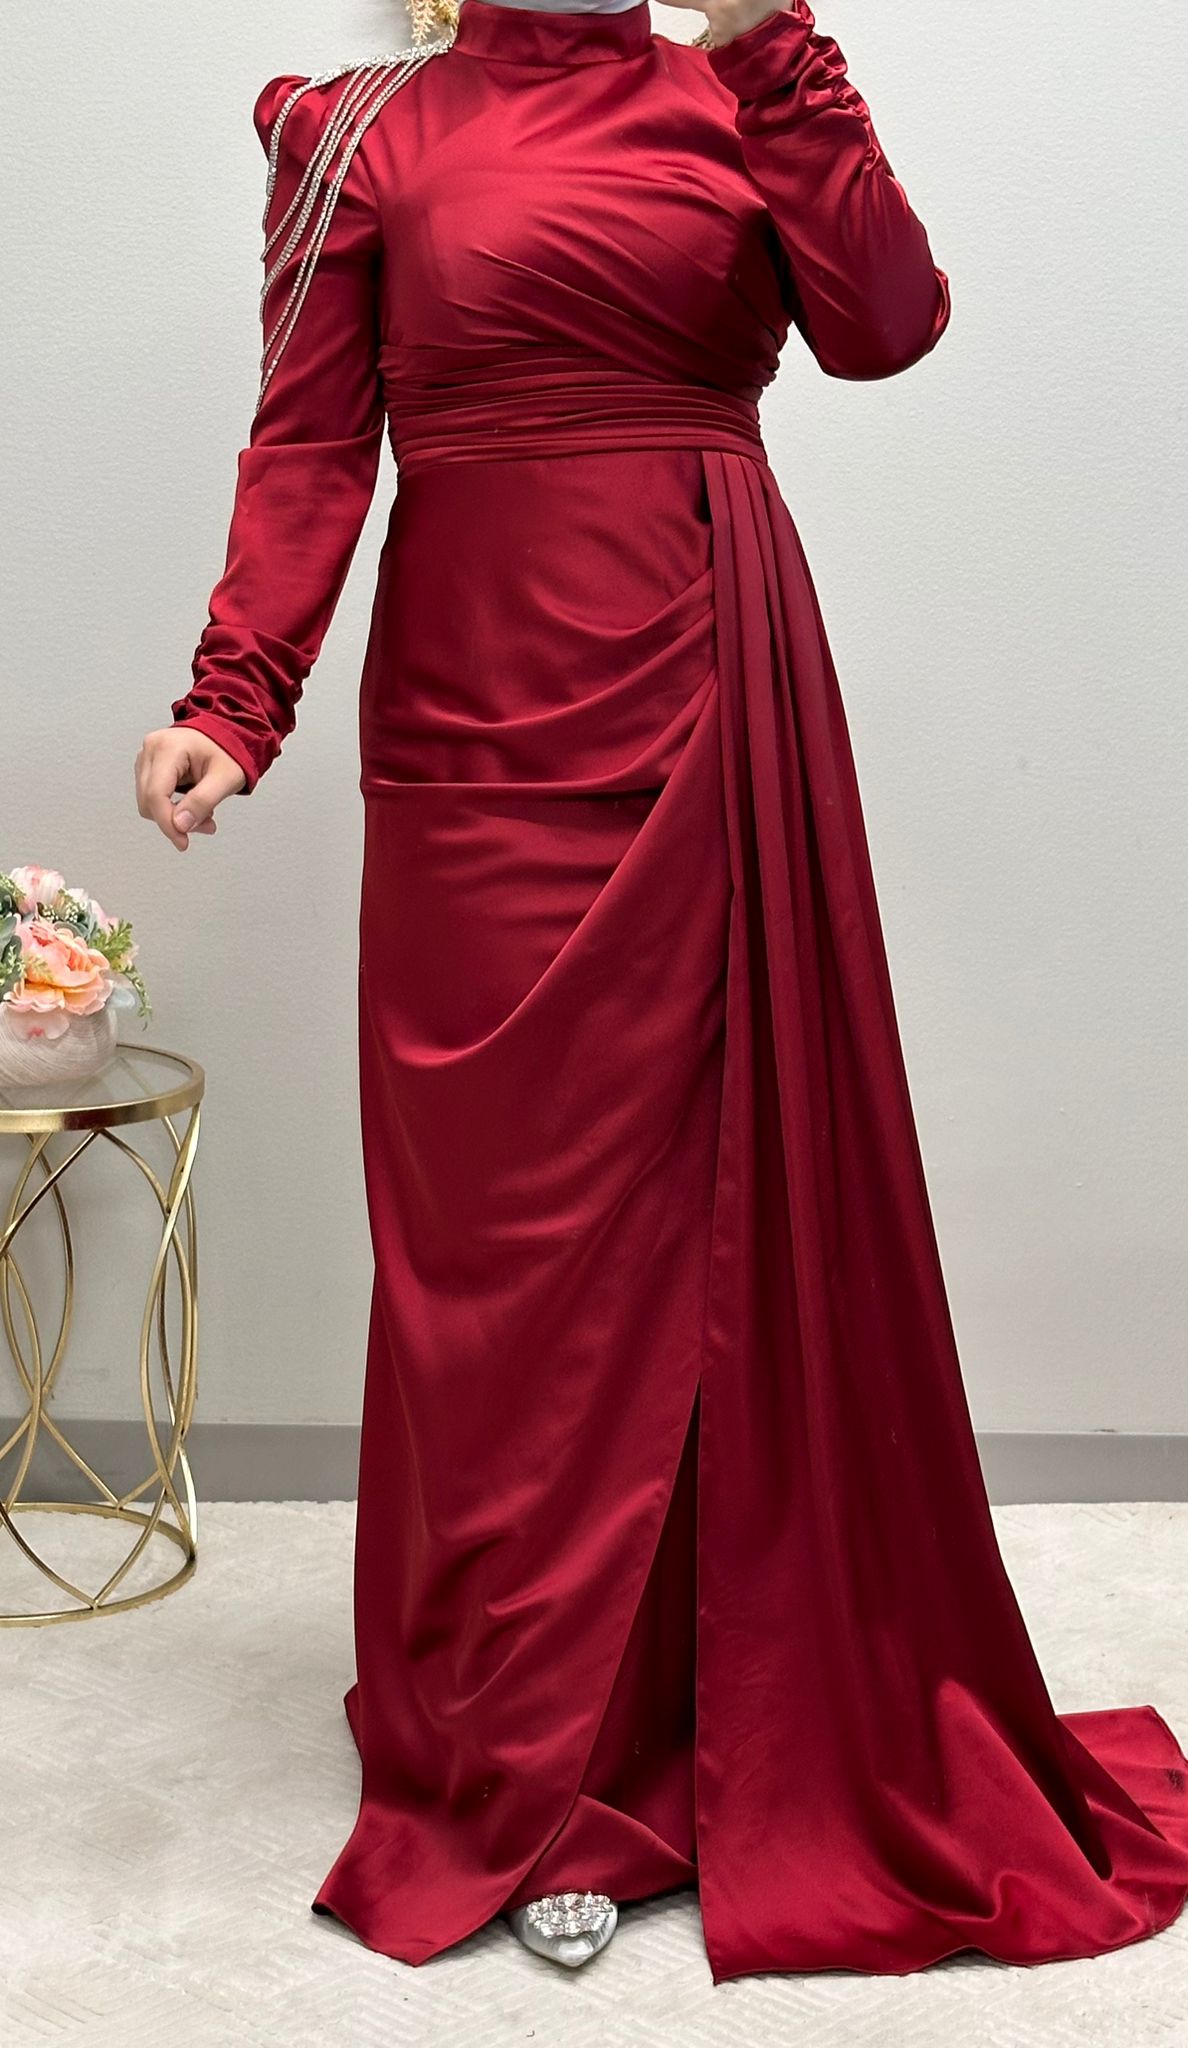 فستان رسمي أحمر مزين بدقة بسلاسل تتدلى على الكتف وطيات متداخلة مصنوعة بدقة. إنه مثال للفخامة، فهو يعرض ثنية جانبية أنيقة، بينما تضفي الأكمام المنتفخة سحرًا ملكيًا.